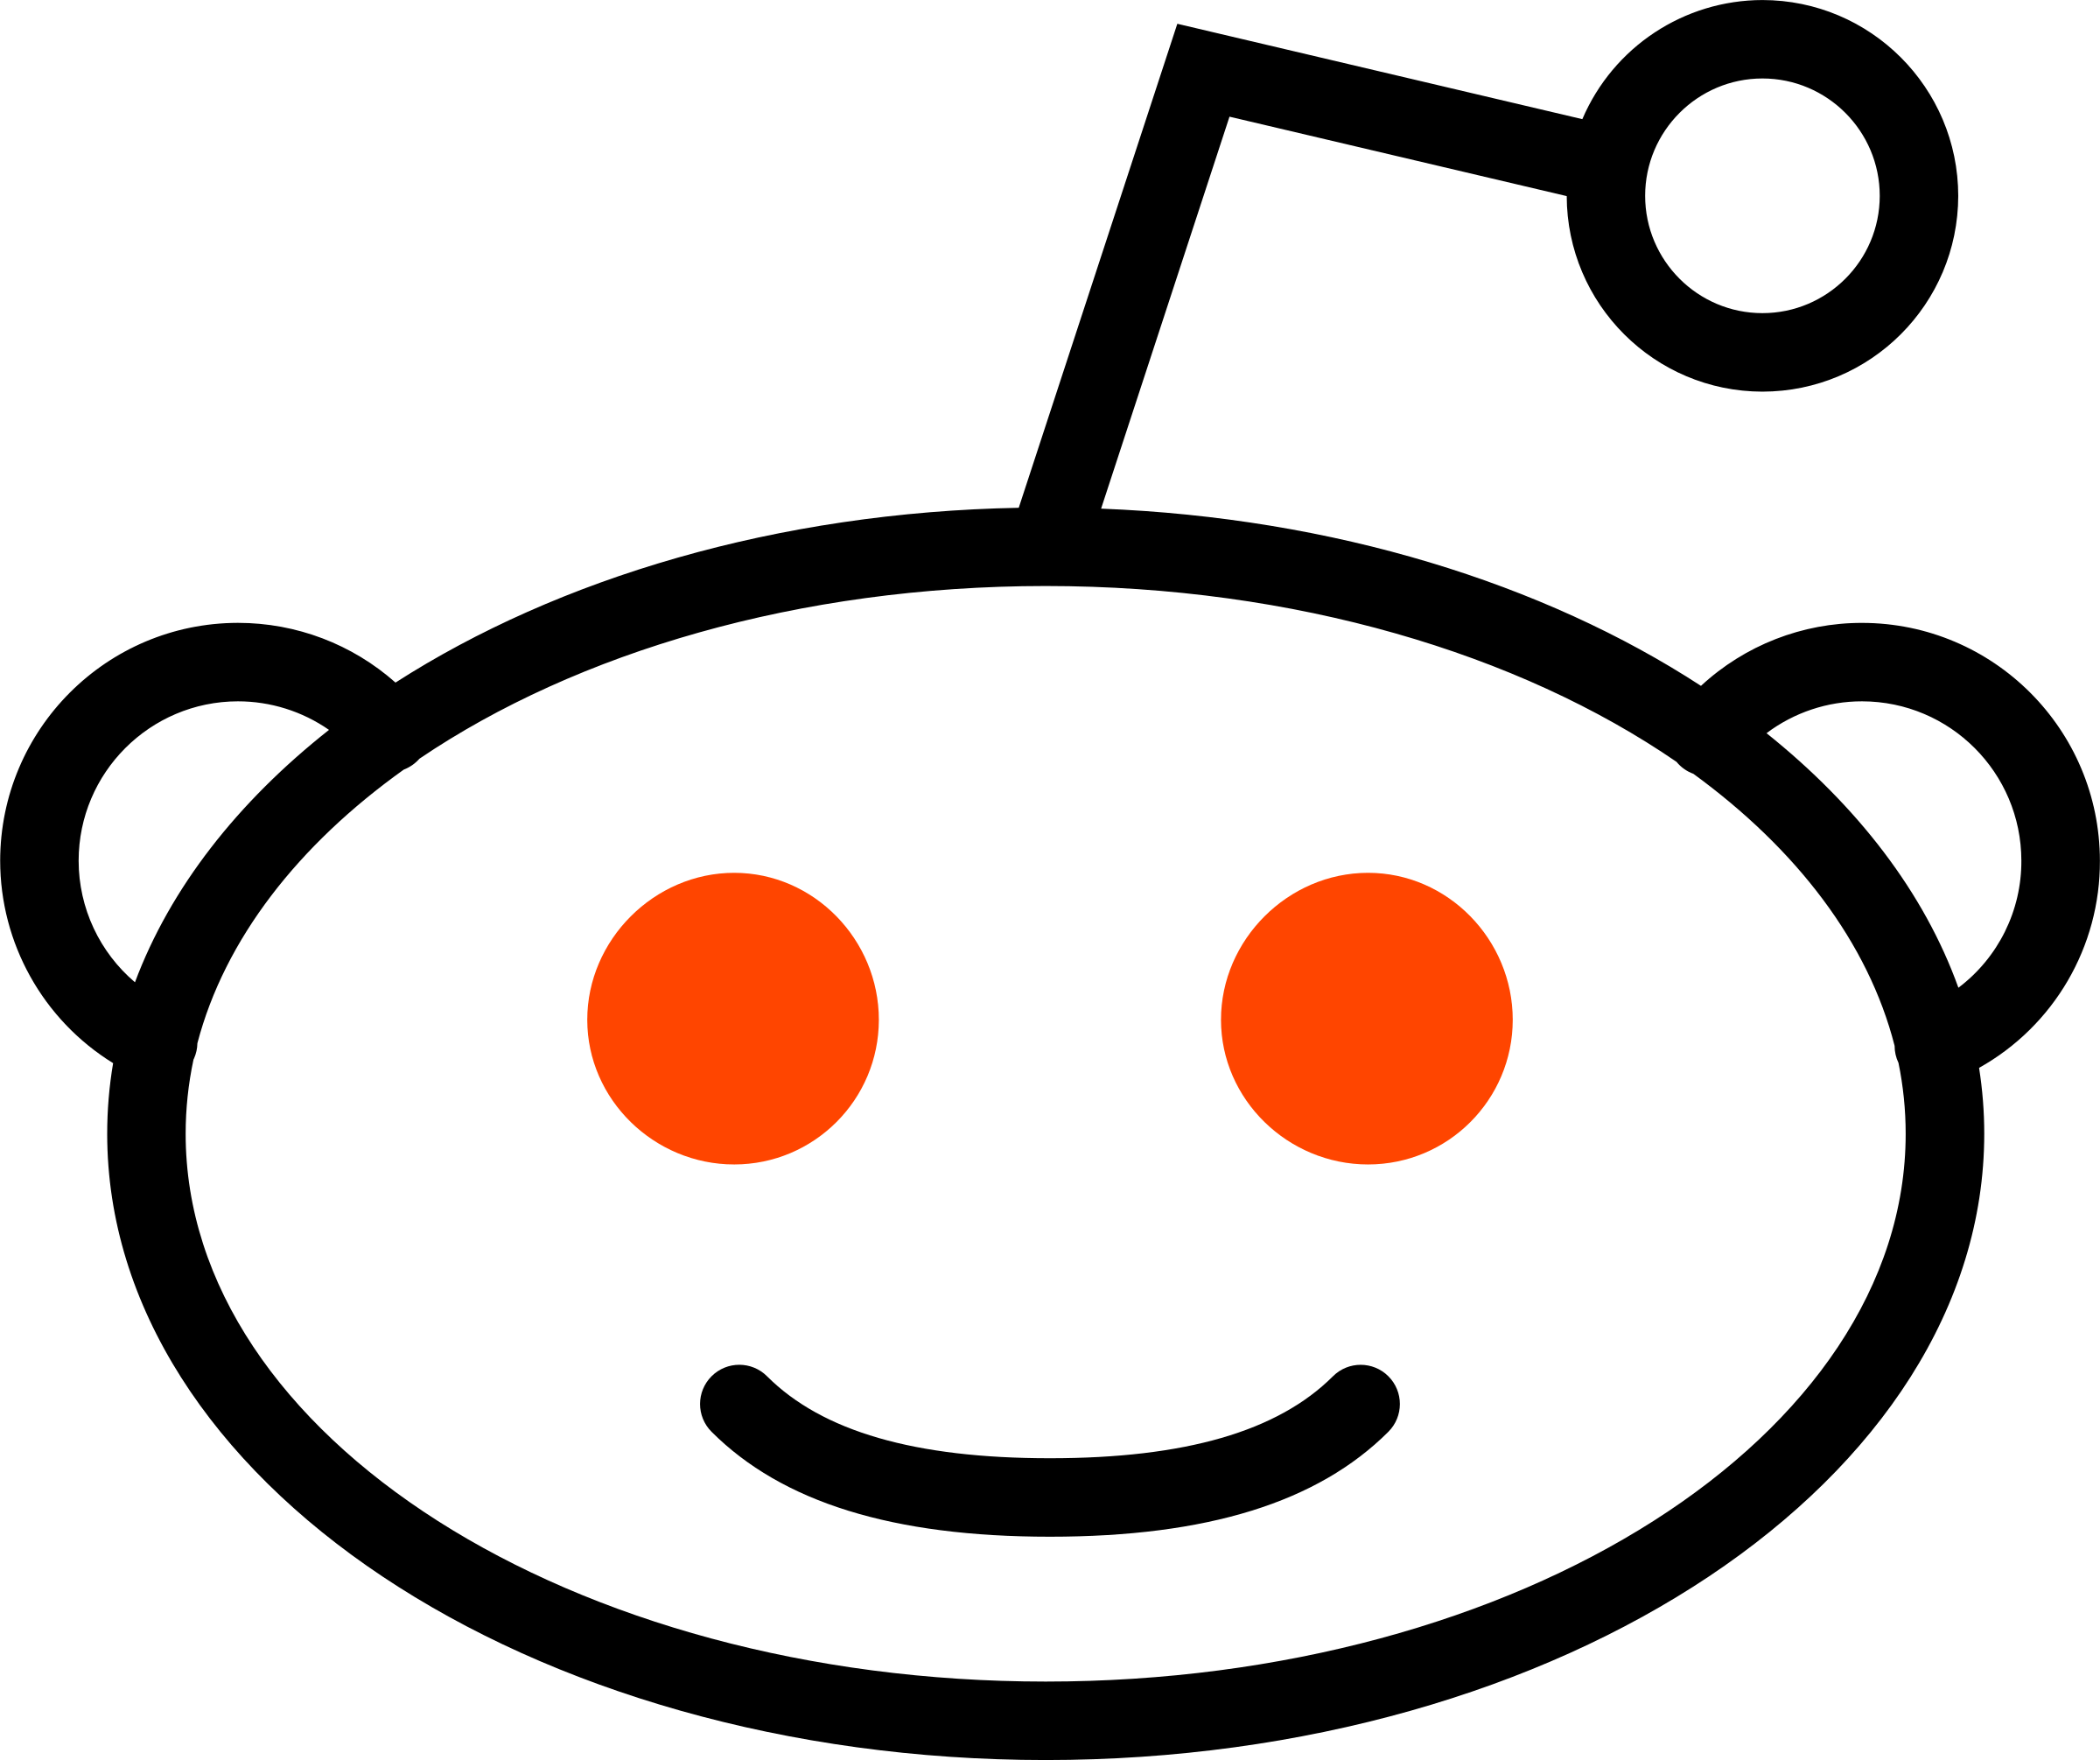 Redit Logo - Reddit icon Logo PNG Transparent & SVG Vector - Freebie Supply